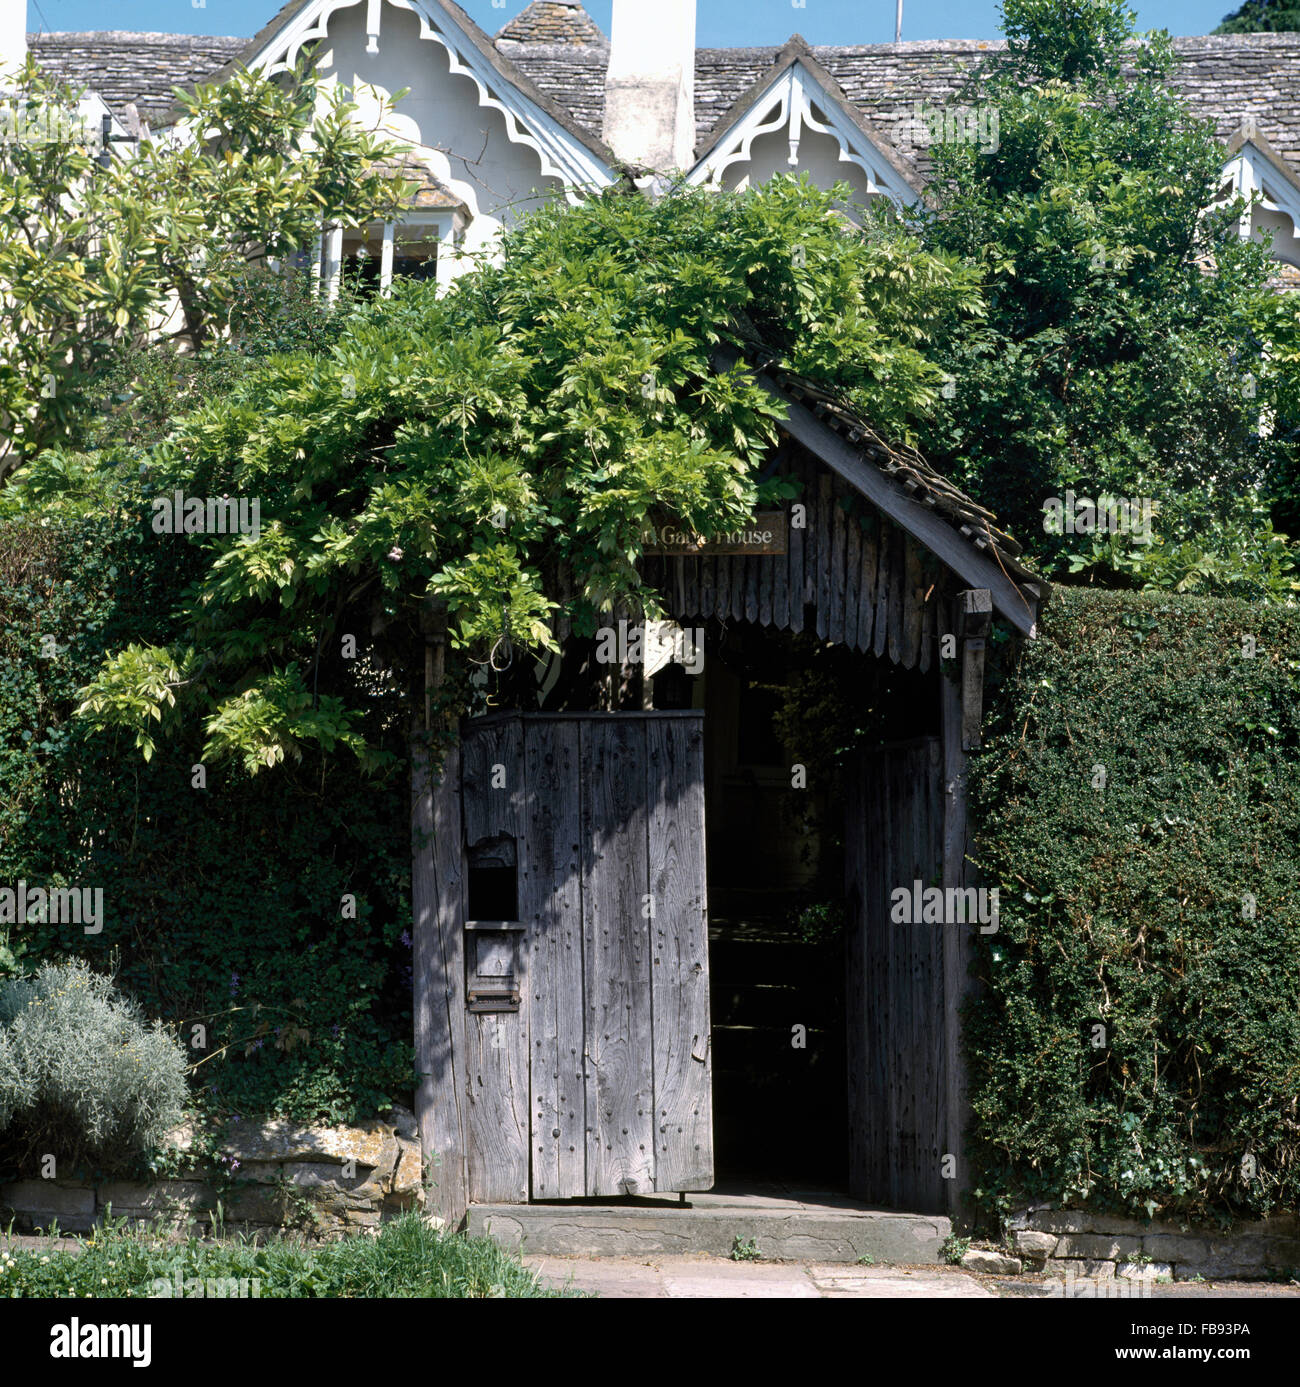 Porche de madera rústica en tall hedge bordeando el jardín frontal de la casa de campo victoriana Foto de stock